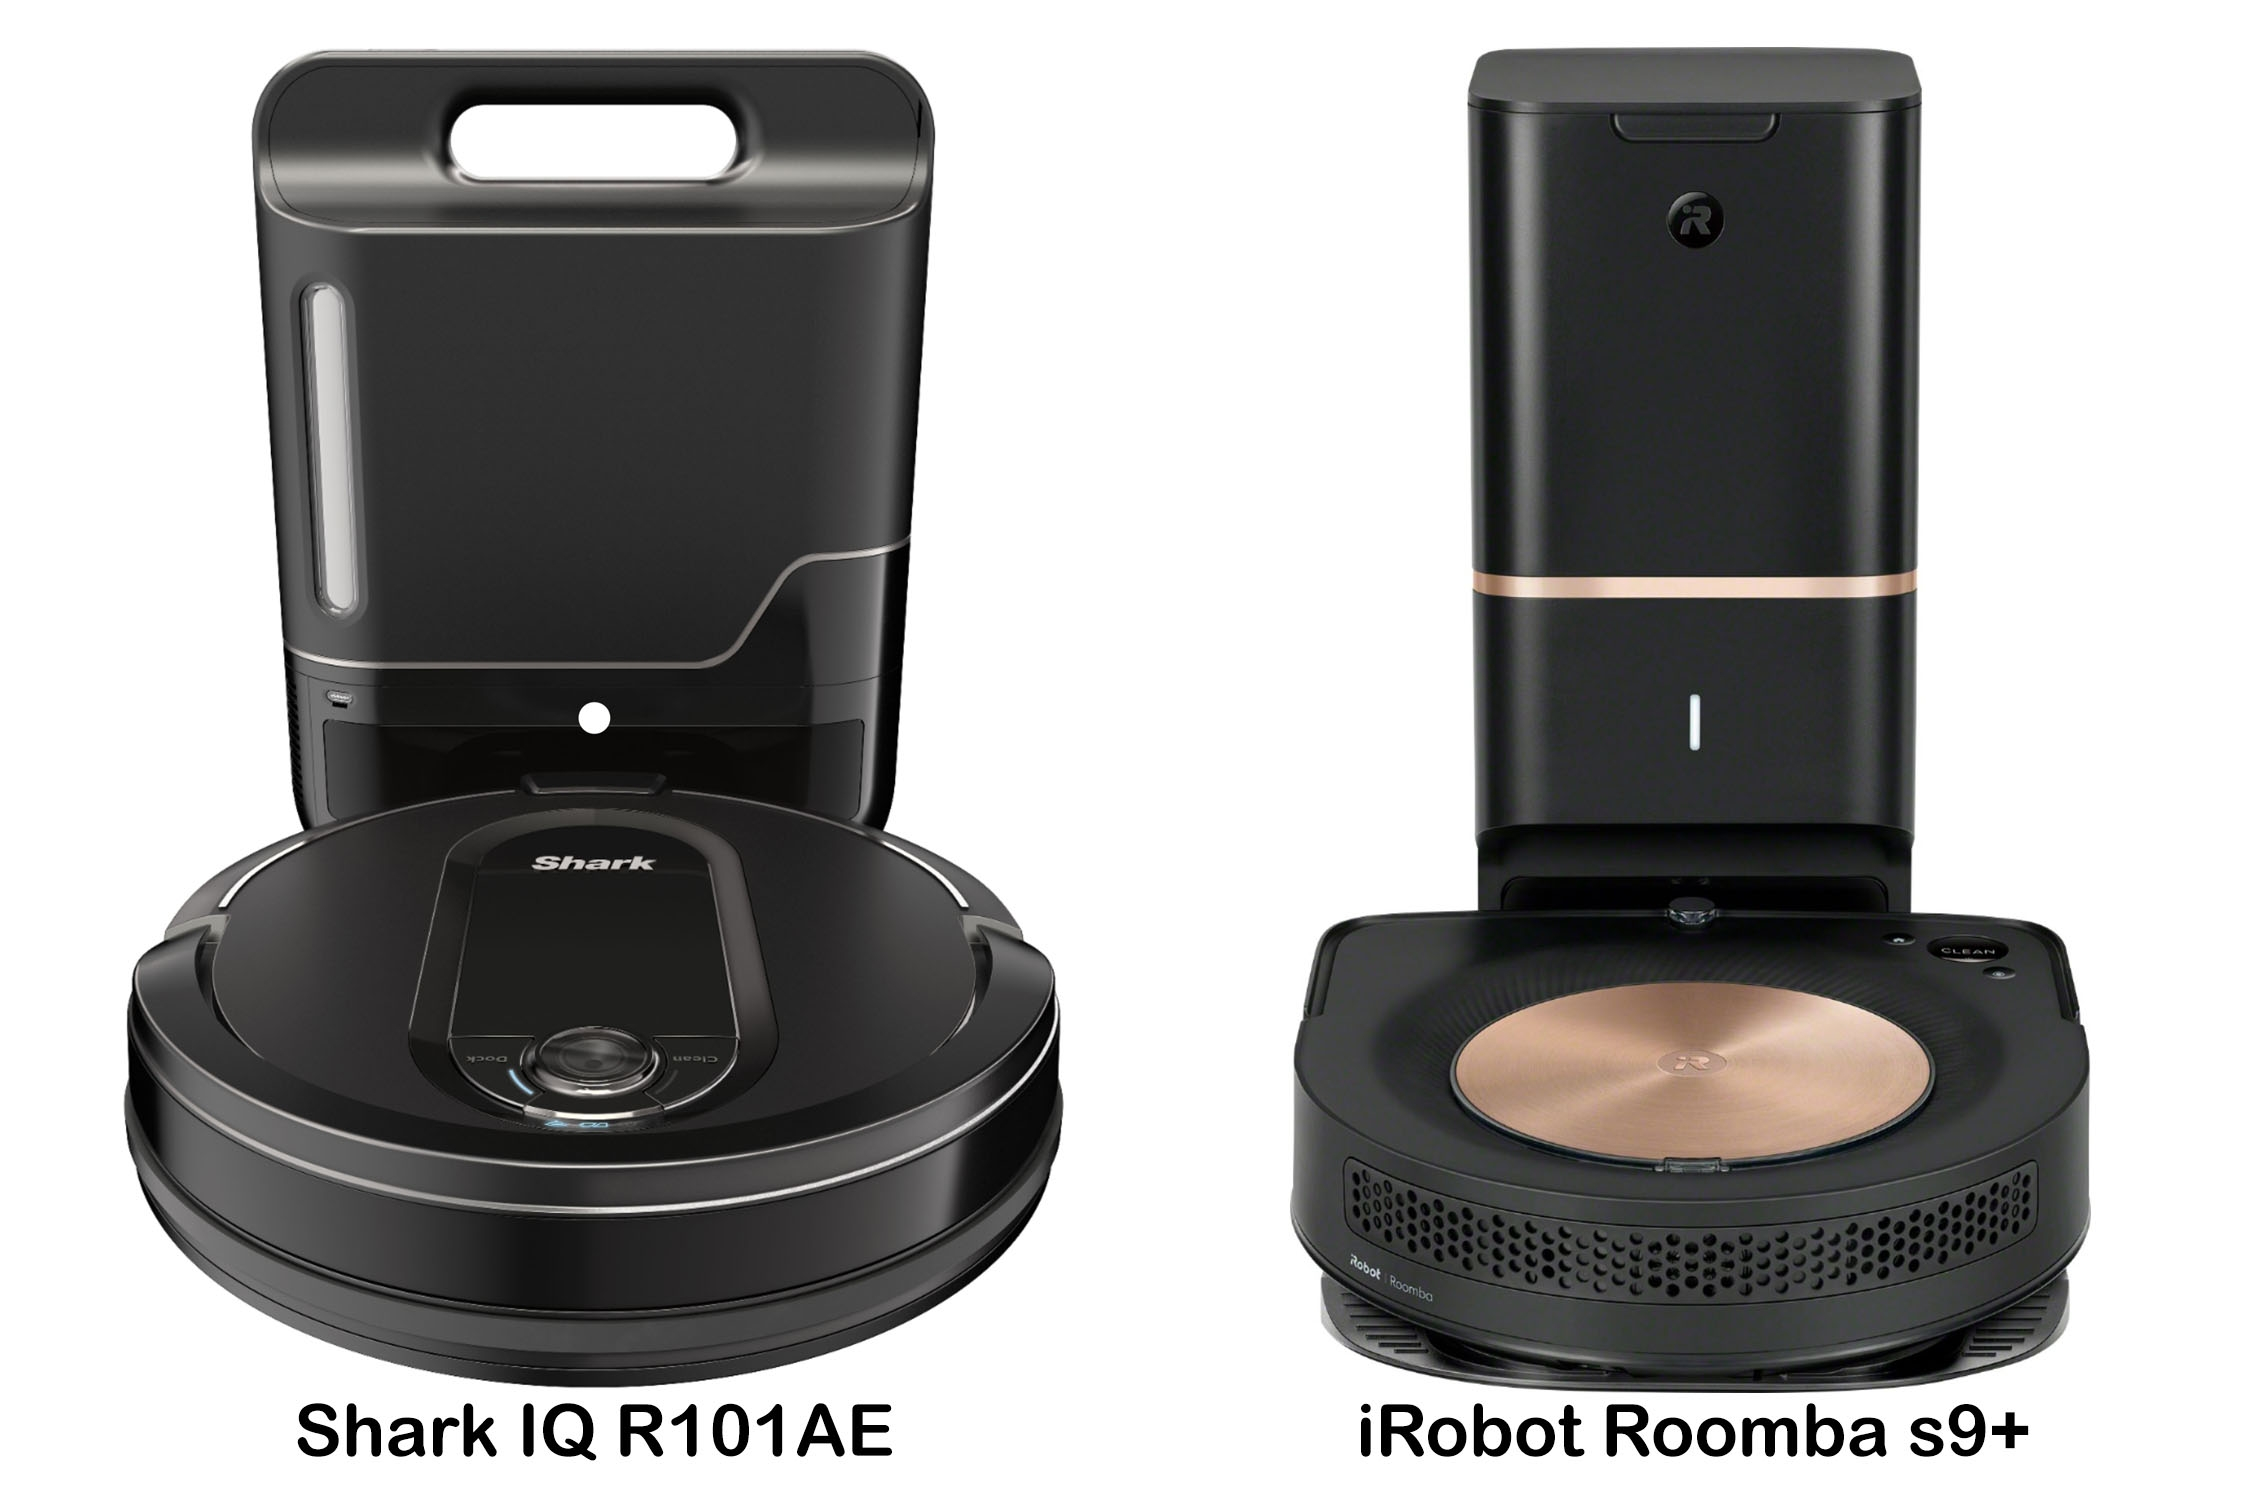 Shark IQ R101AE vs iRobot Roomba s9